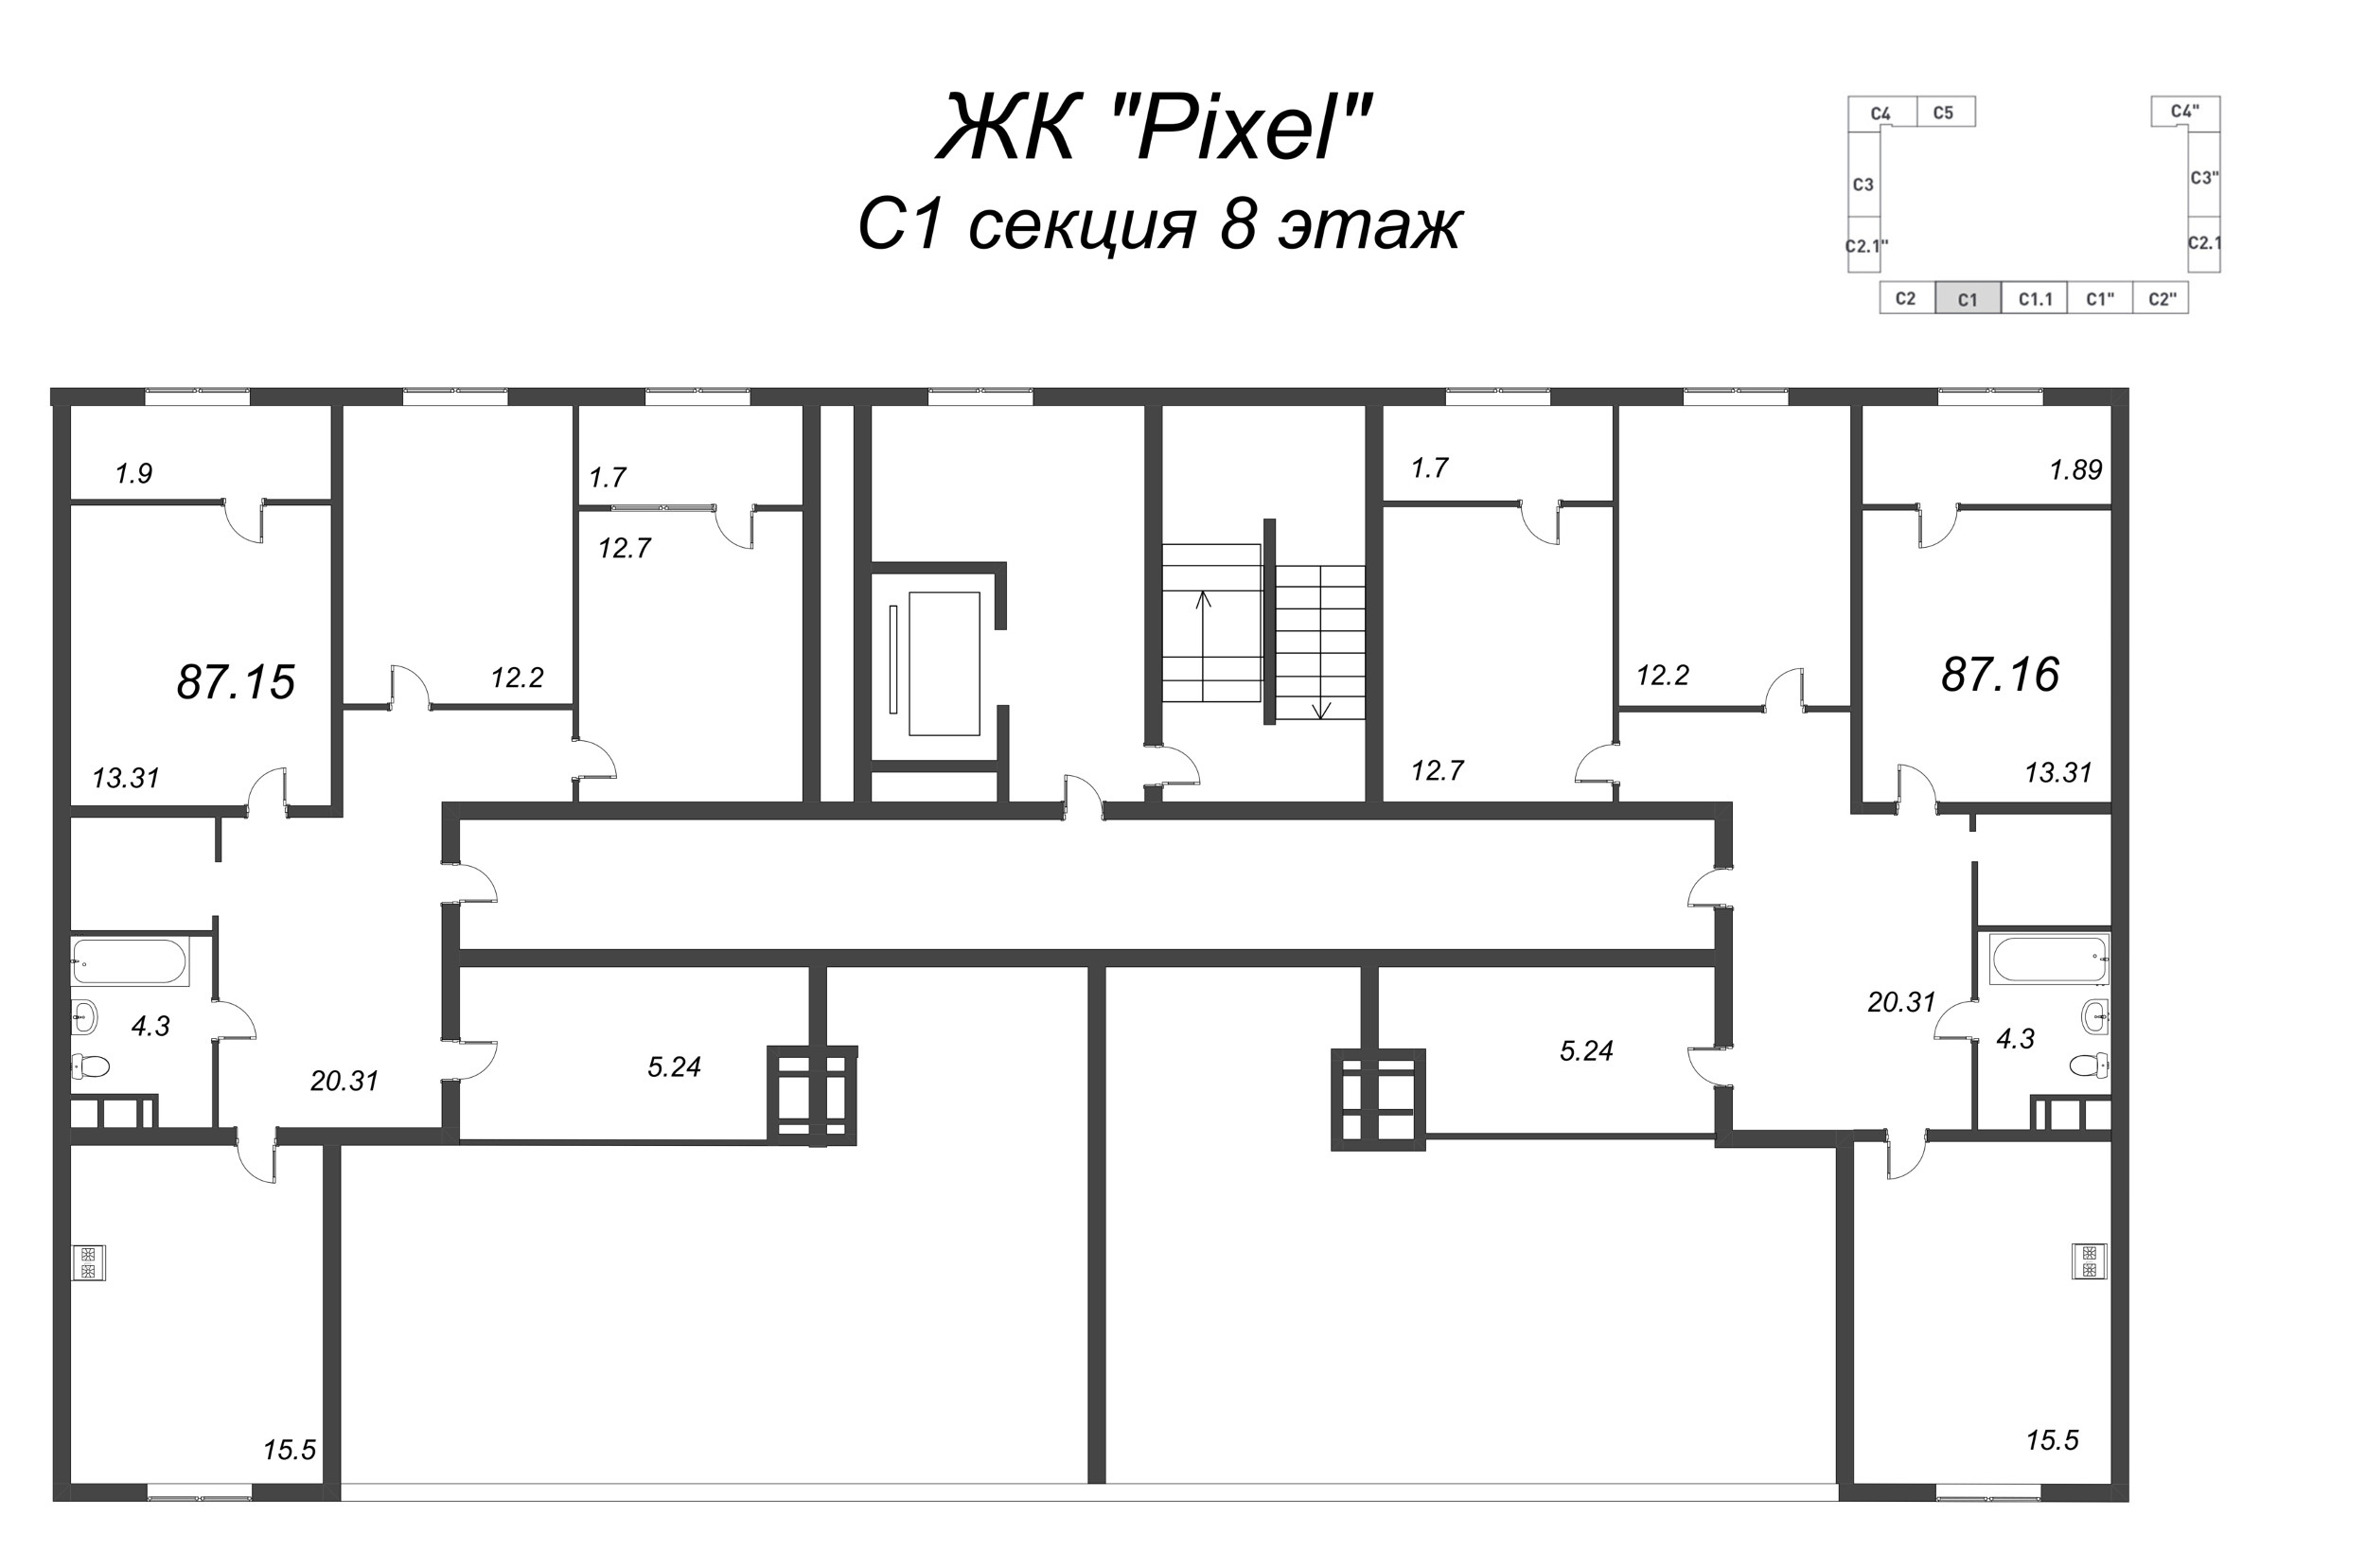 3-комнатная квартира, 112.37 м² в ЖК "Pixel" - планировка этажа